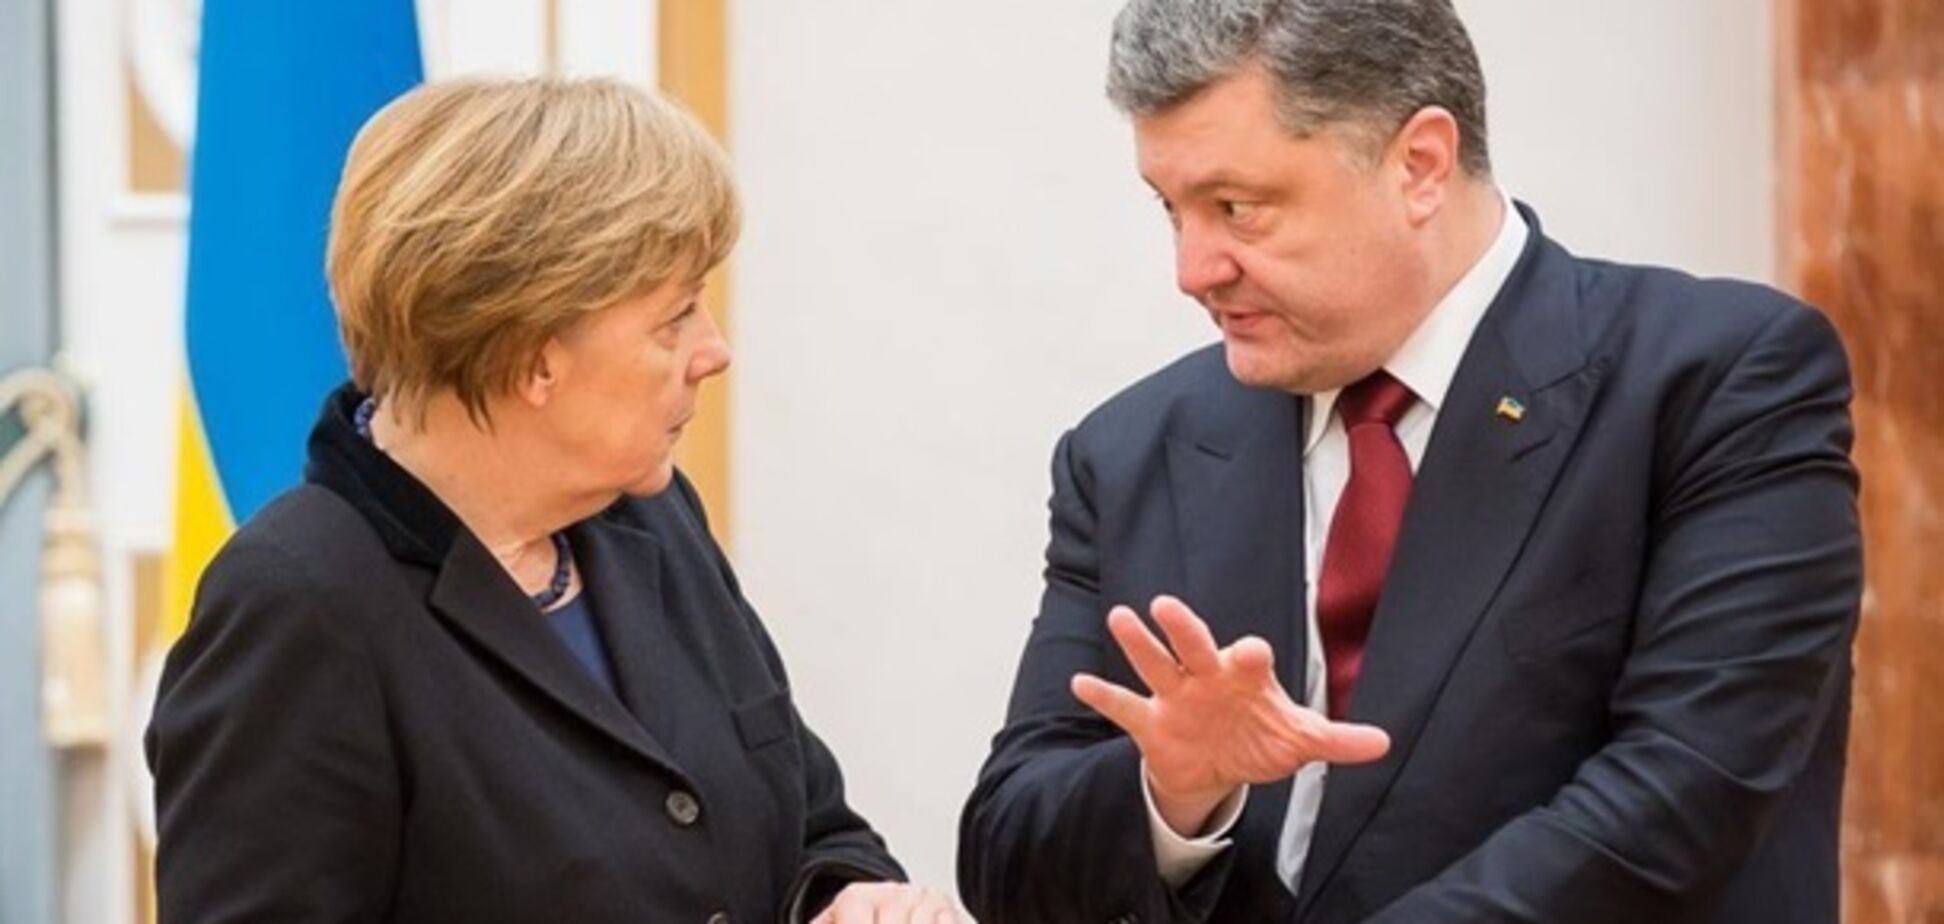 Меркель внезапно захотела встретиться с Порошенко перед дебатами